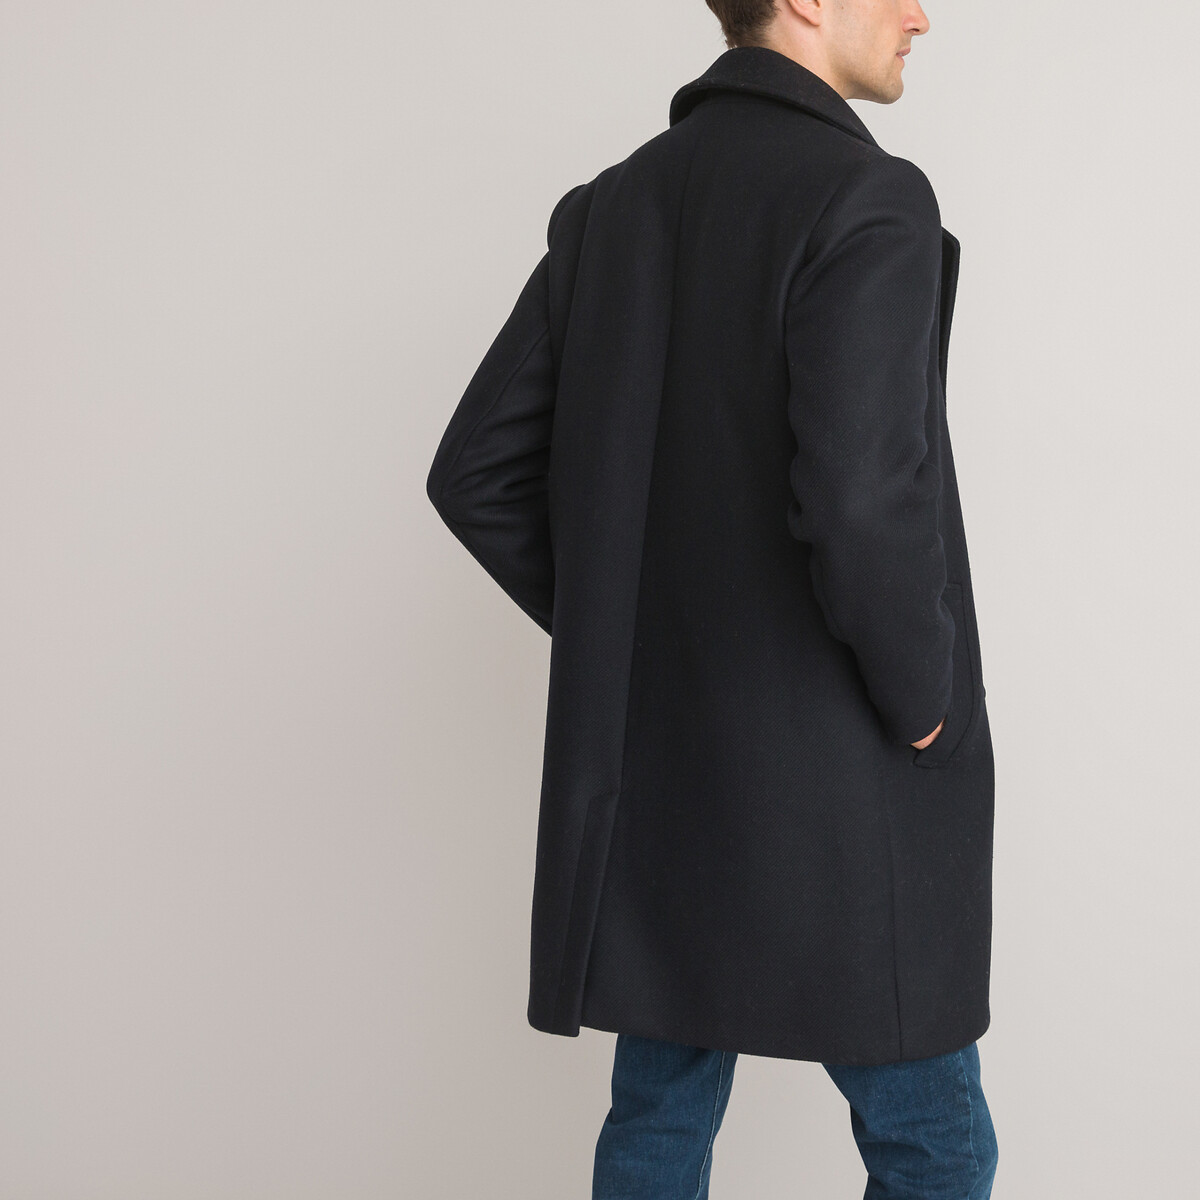 Пальто Из чистой шерсти производства Франции XXL синий LaRedoute, размер XXL - фото 4